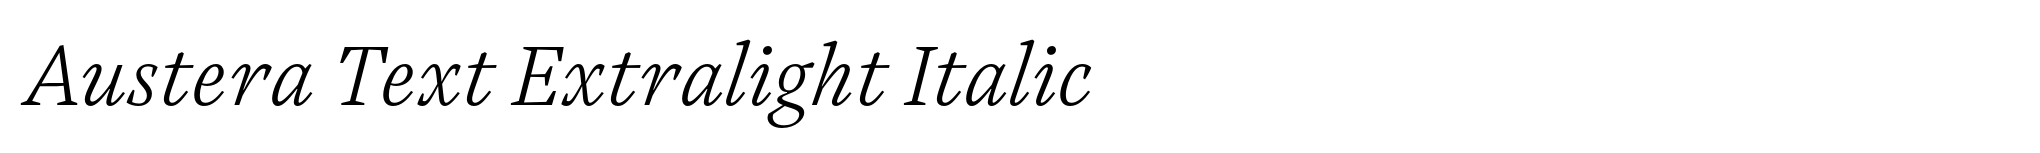 Austera Text Extralight Italic image